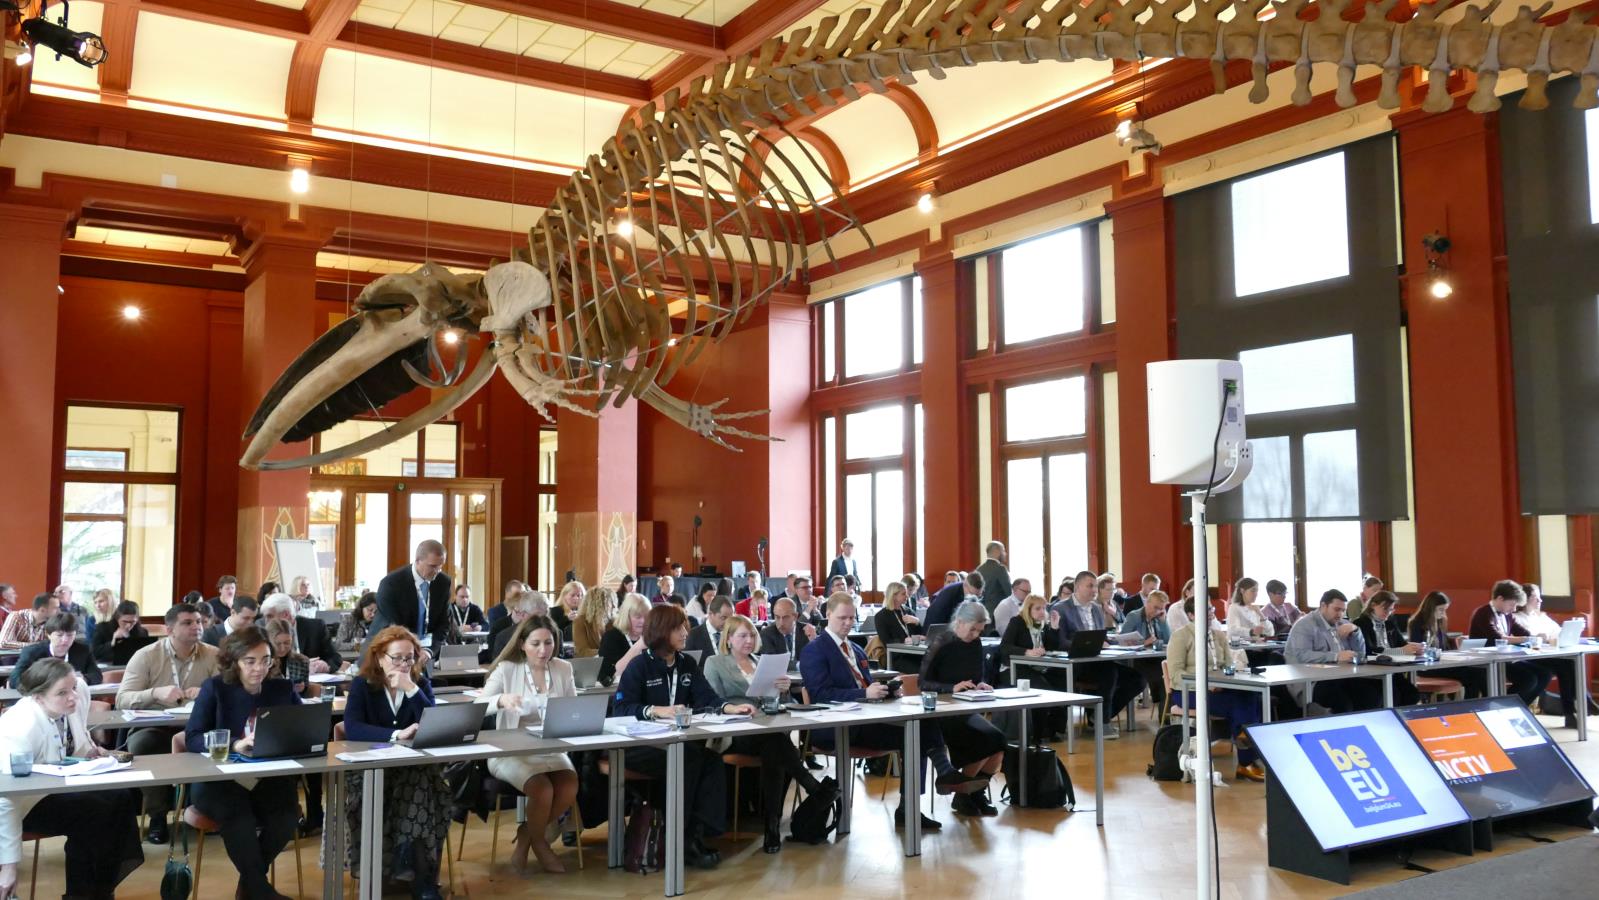 Předsednický workshop se konal v prostorách kongresového centra v ZOO Antverpy